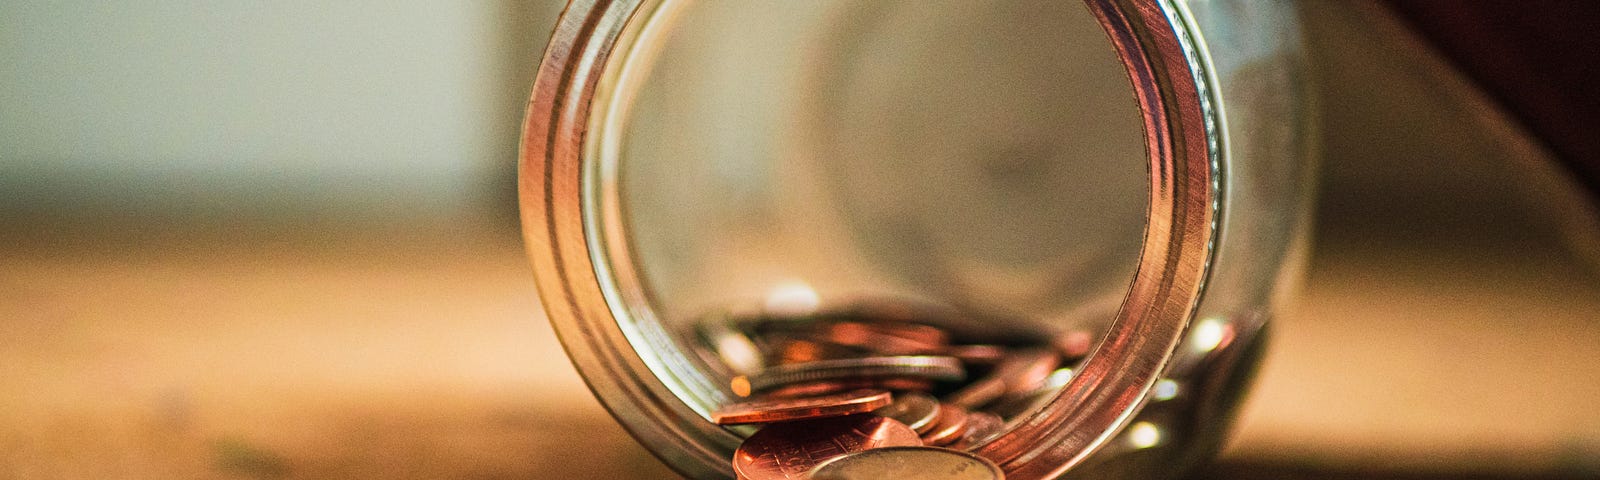 A jar of coins spilt on a table.